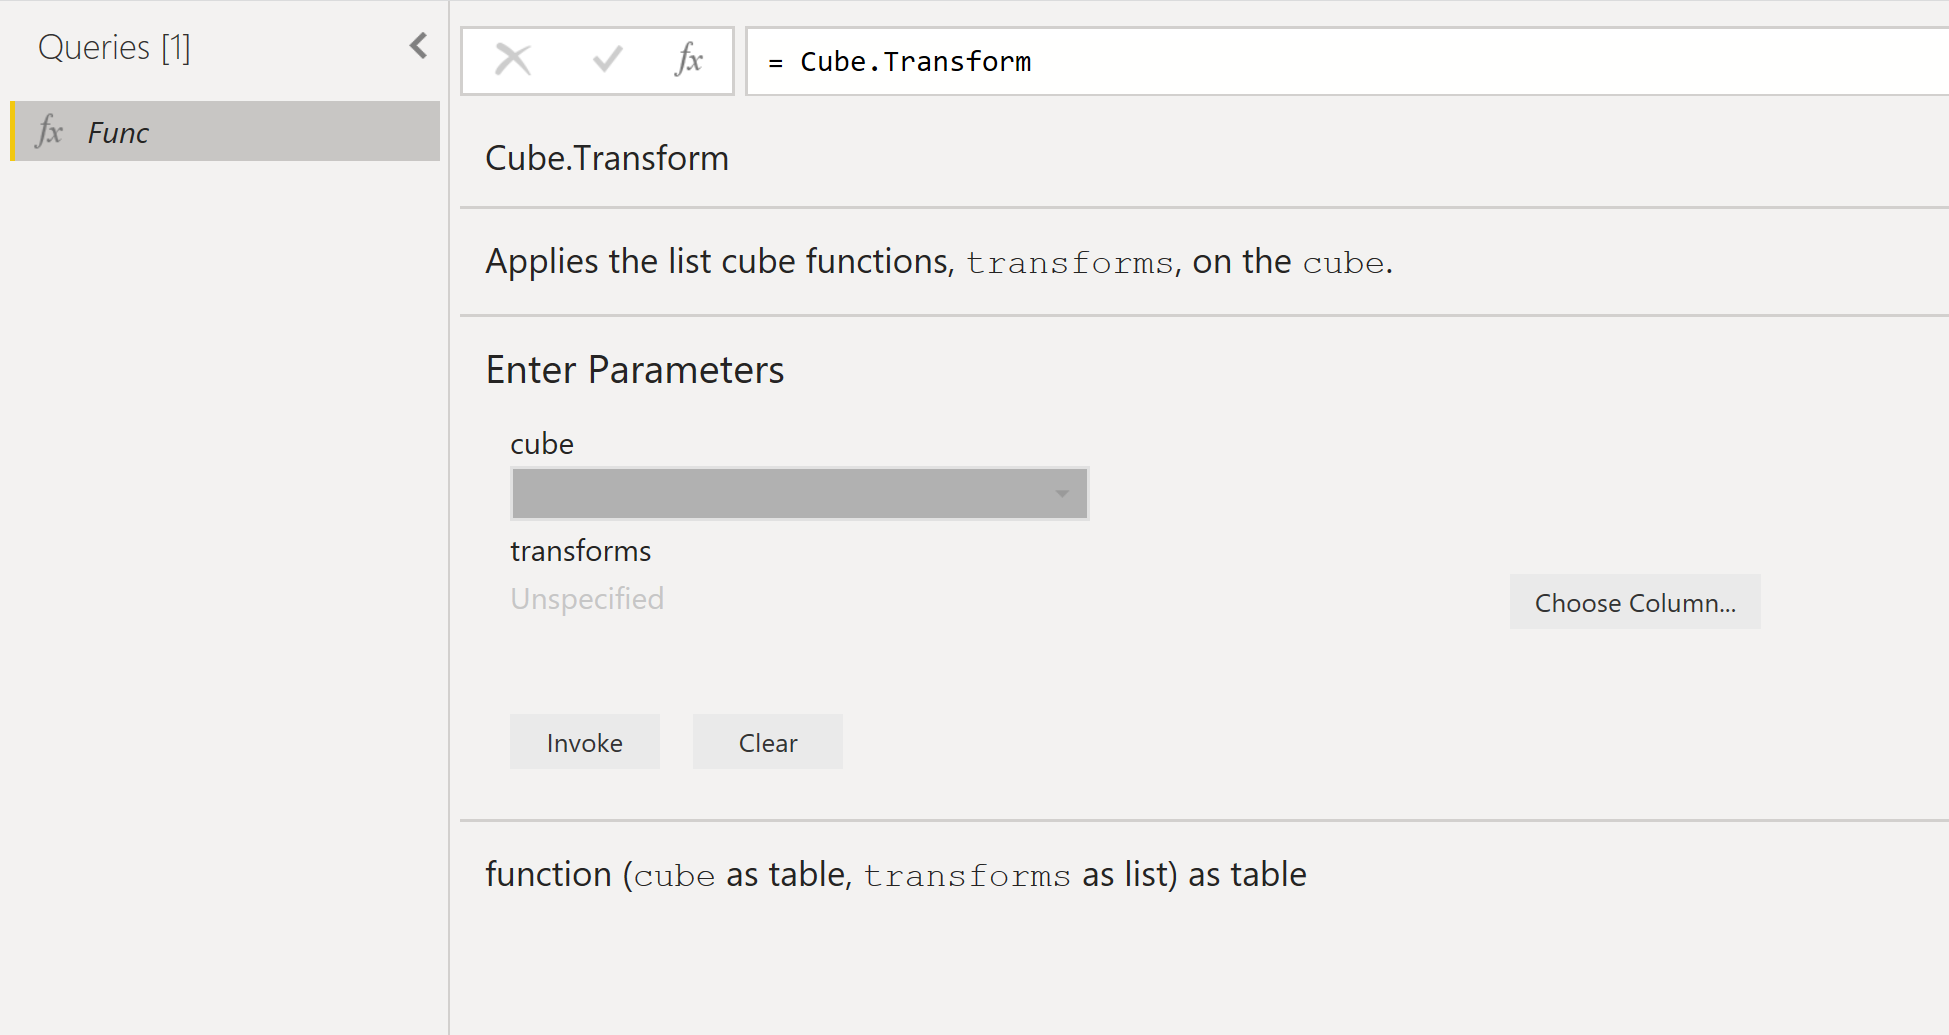 Obrázok dialógového okna vytvorenie funkcie zobrazujúceho informácie o funkcii Cube.Transform.